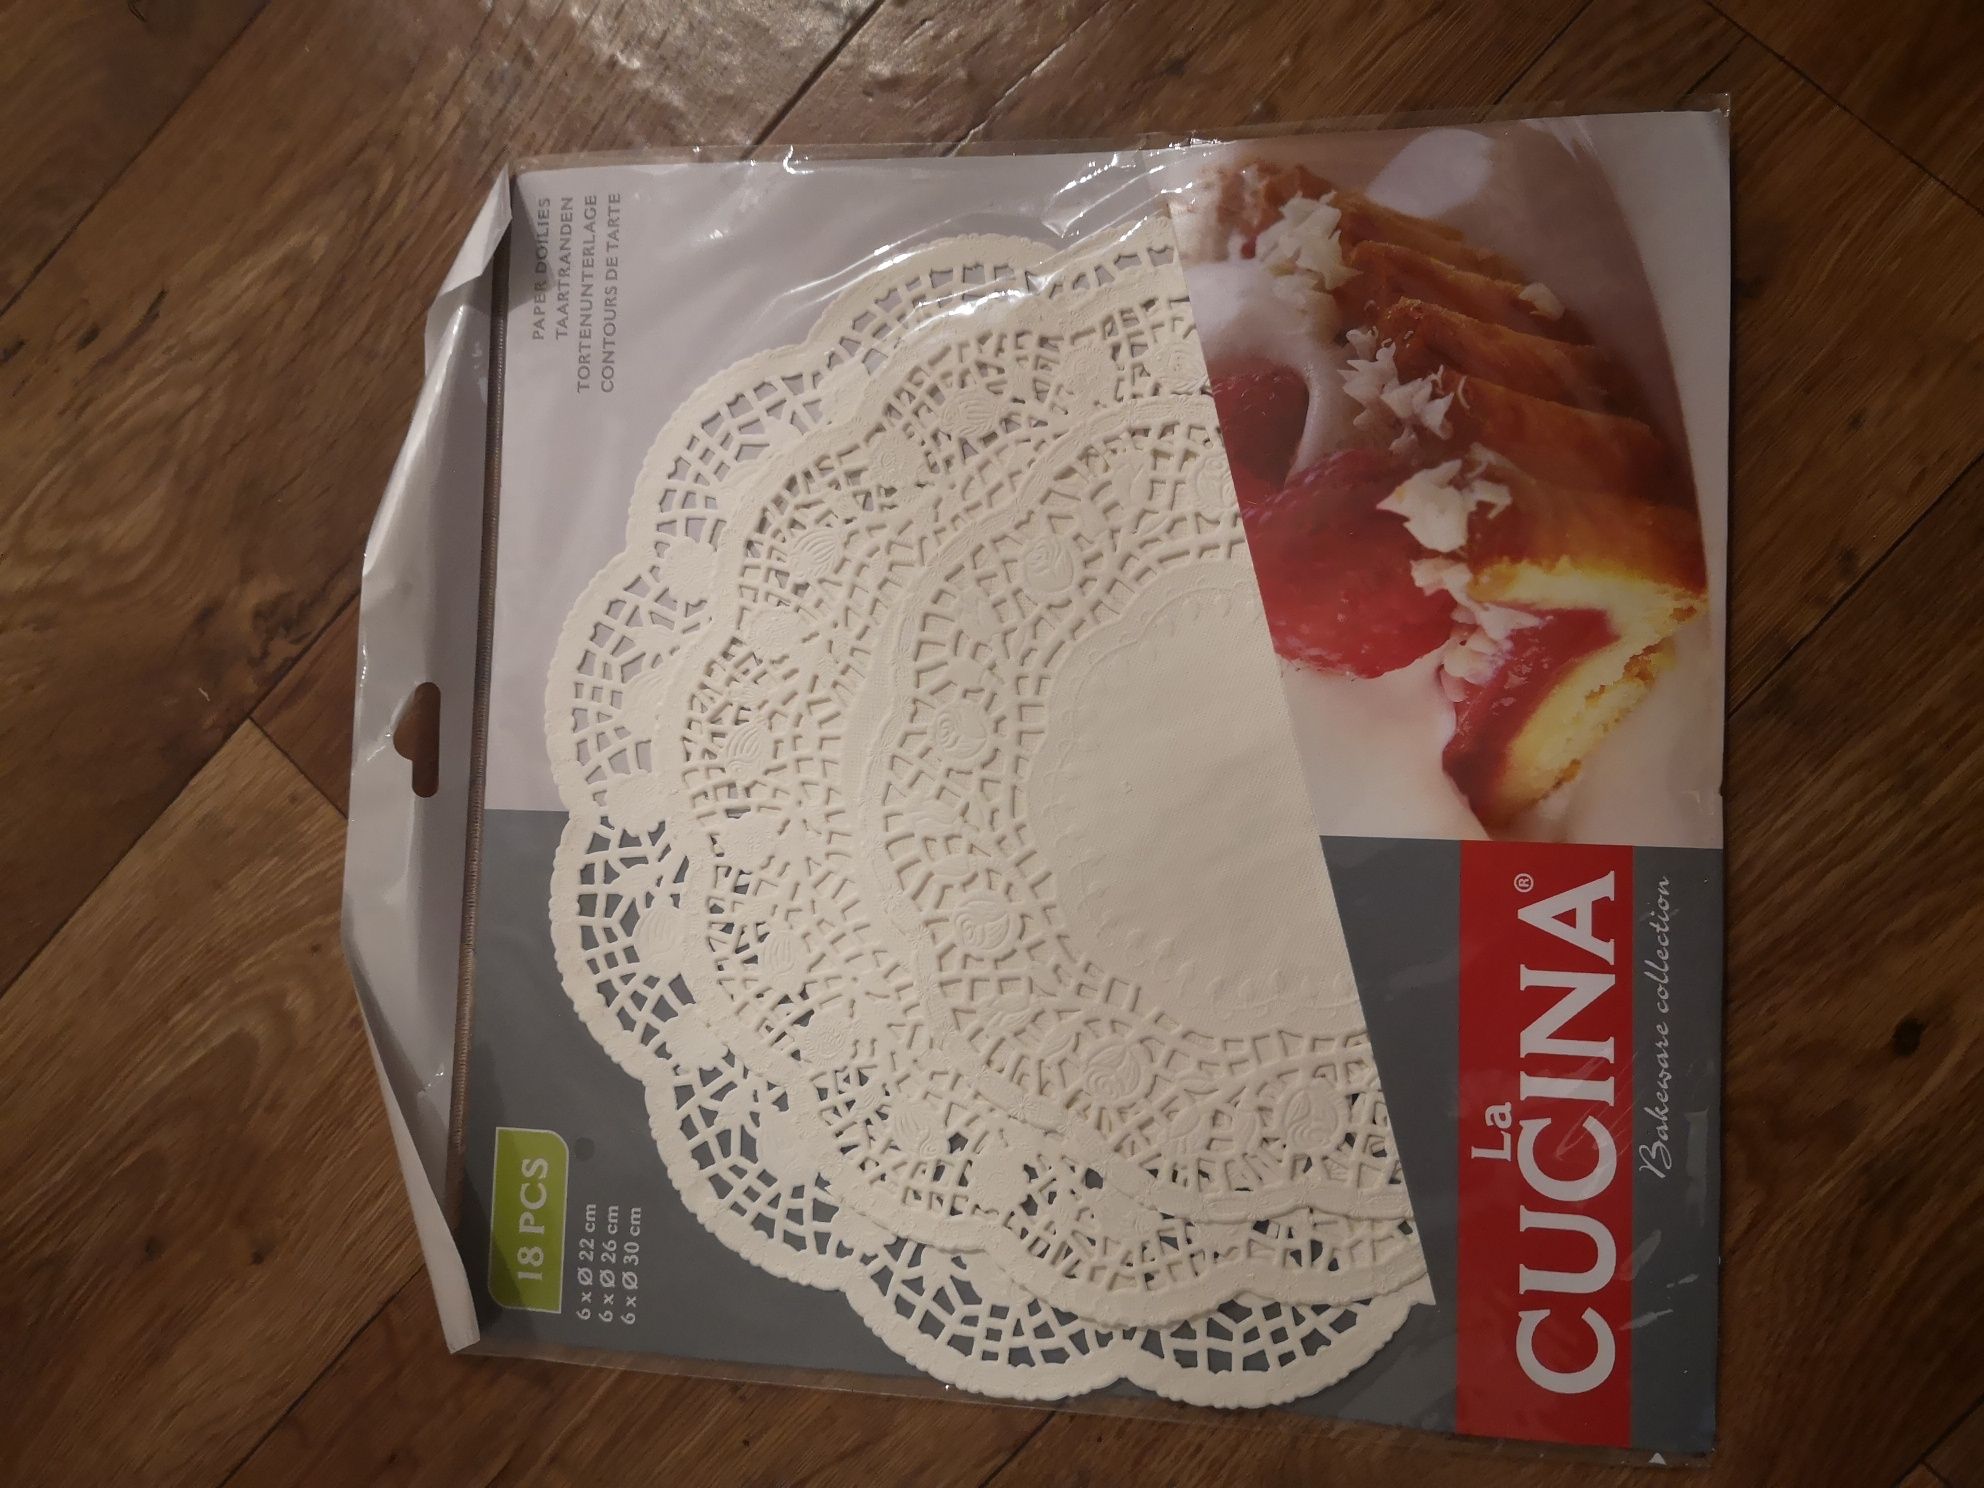 Podkładki papierowe pod tort 18 szt LA Cucina